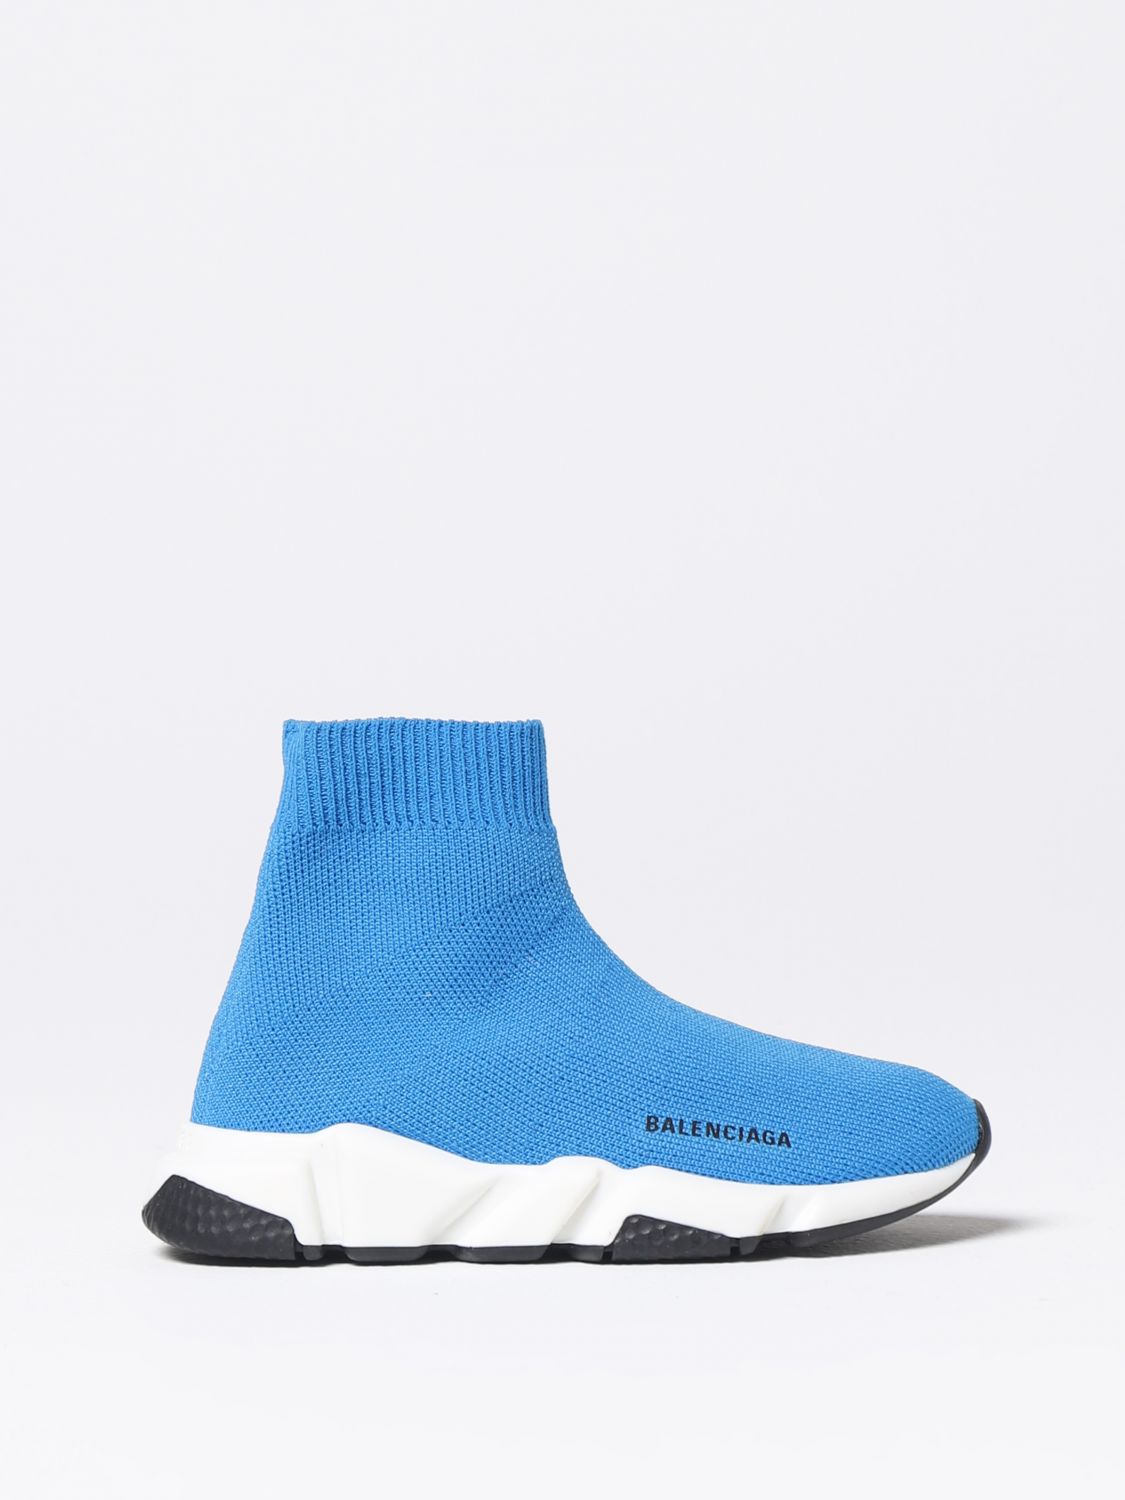 BALENCIAGA: shoes for boys - Blue | Balenciaga shoes 597425W2DB2 online ...